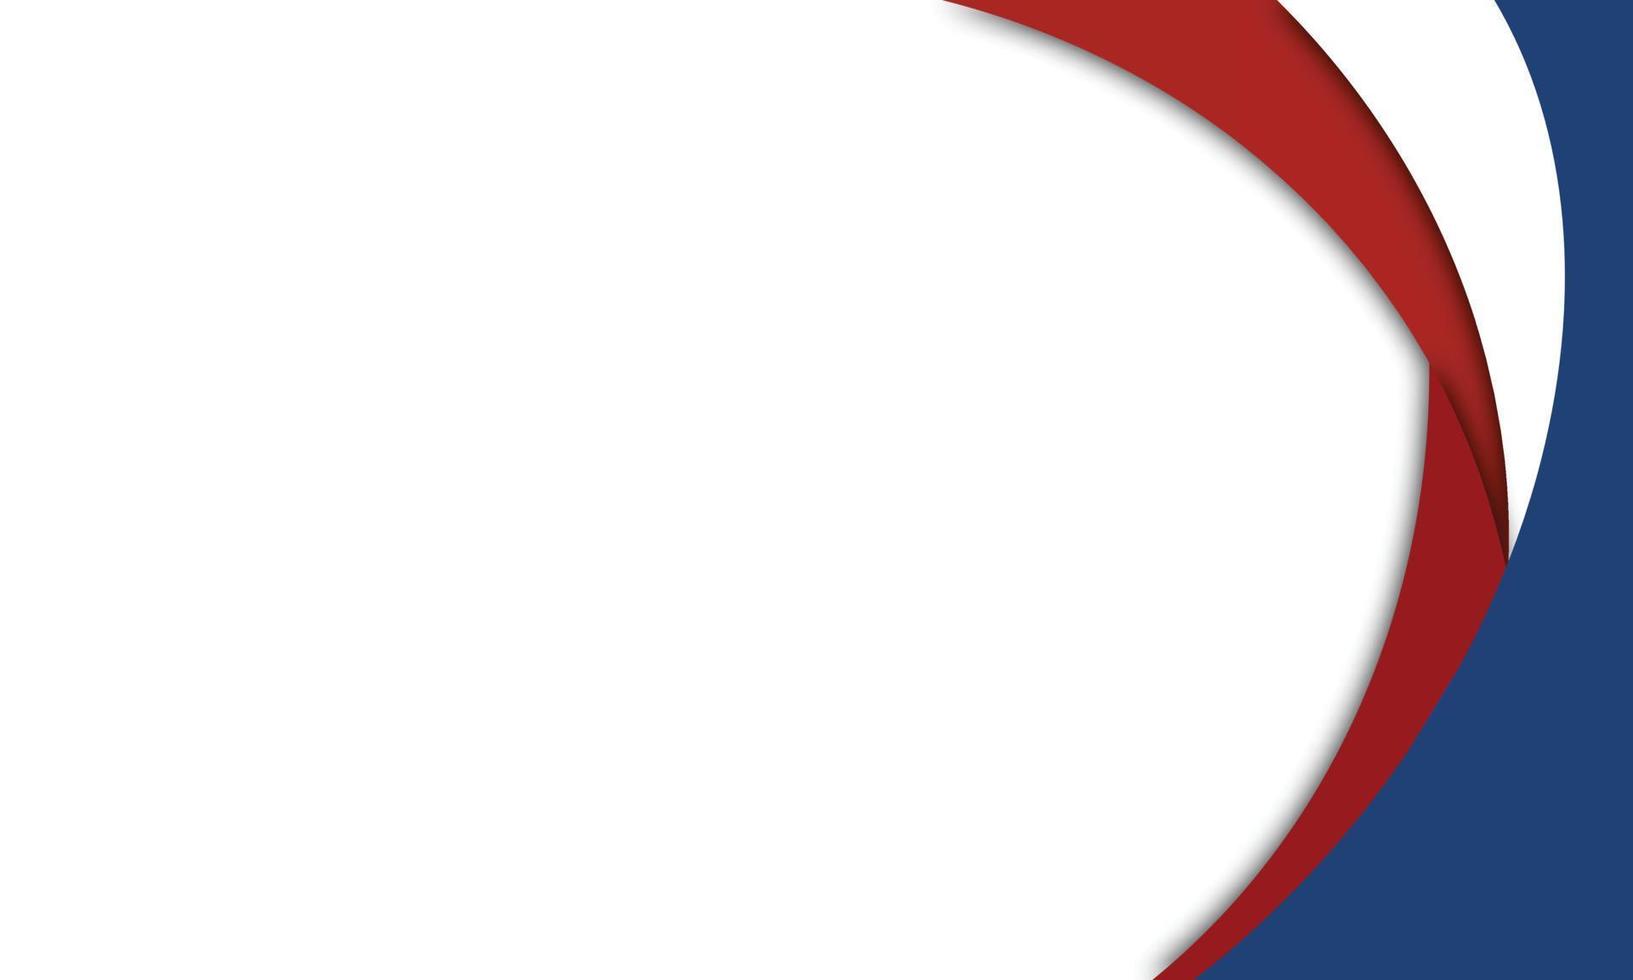 fundo patriótico bandeira nacional design de linhas onduladas de cartaz de cartão de banner modelo em feriados nacionais símbolo patriótico do país ilustração vetorial design símbolos americanos vermelhos e azuis vetor